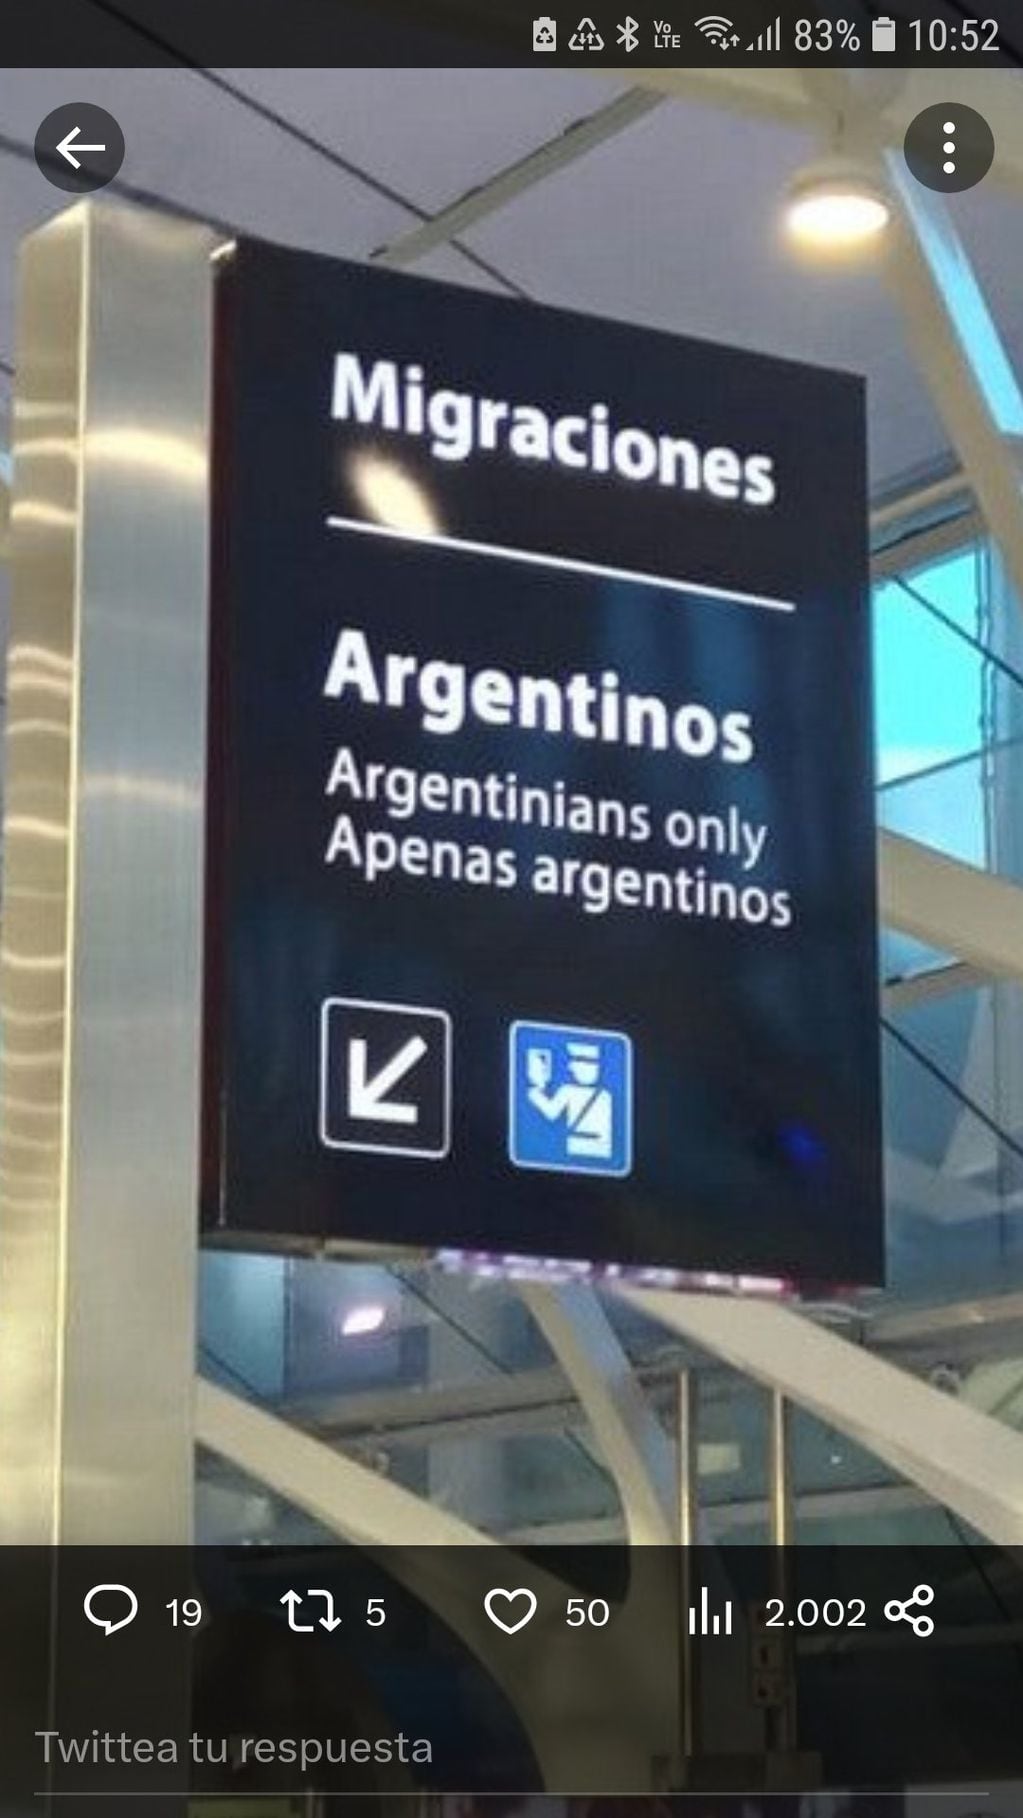 El cartel que confundió a los argentinos se encuentra en el área de Migraciones. Foto: Captura de twitter